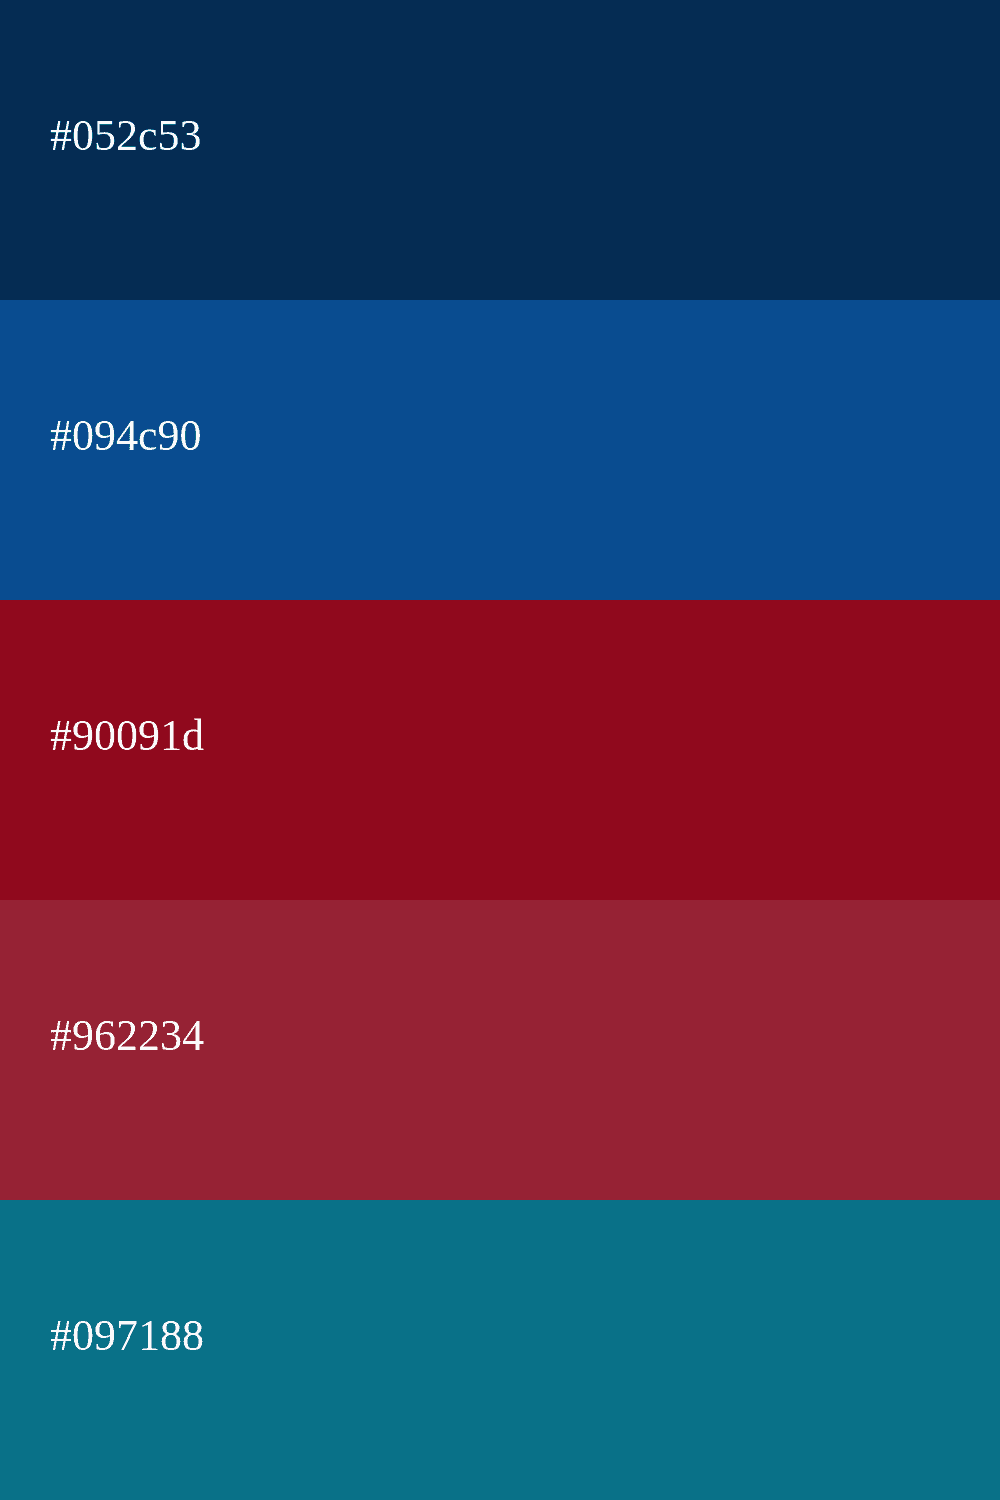 paleta de colores con azul oscuro y rojo